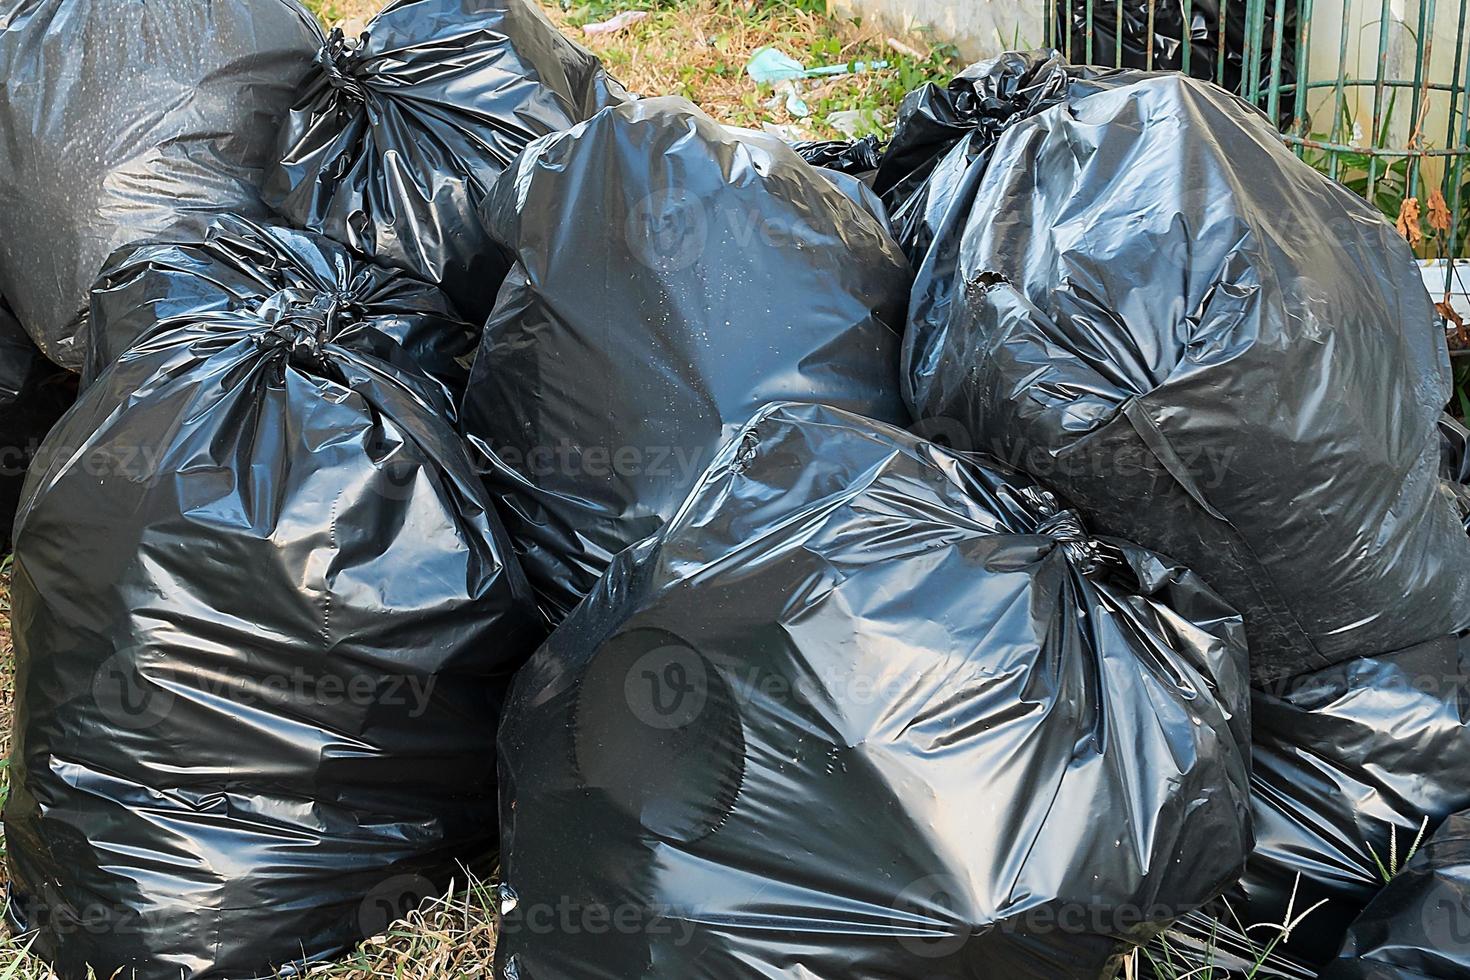 dépotoir de sac poubelle, poubelle, poubelle, ordures, ordures, tas de sacs en plastique photo